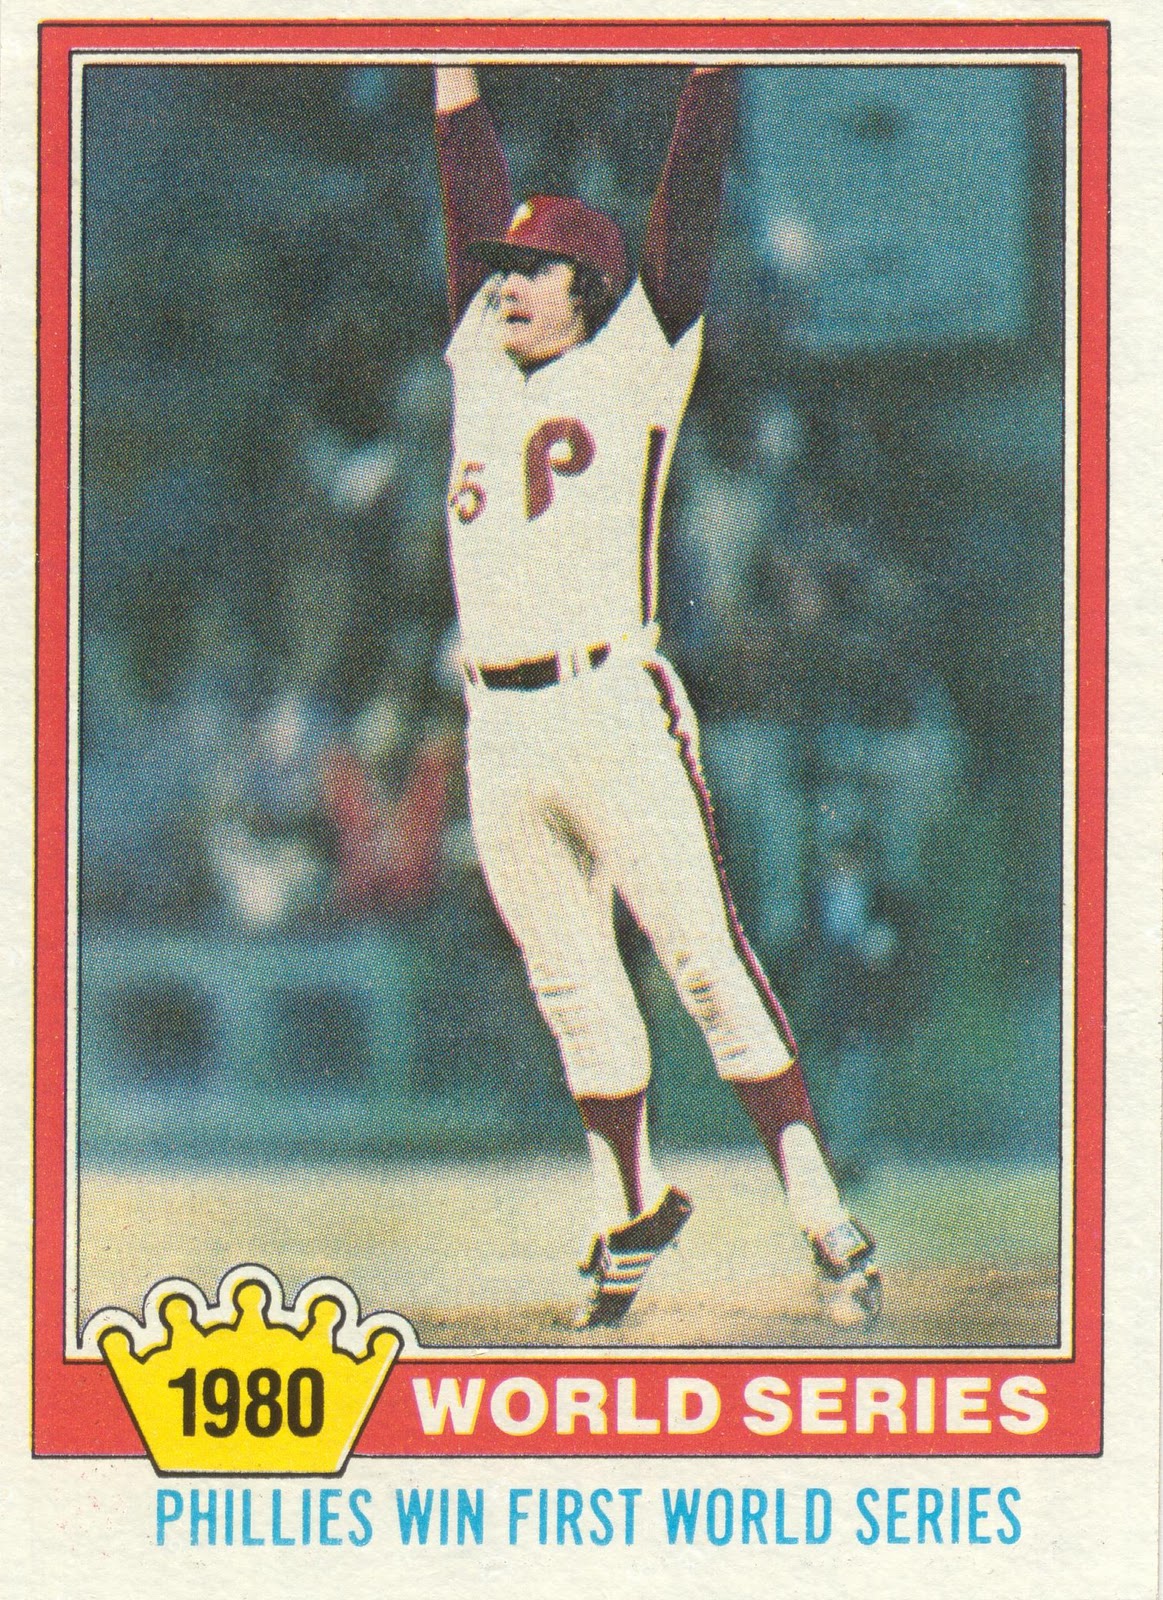 1980 Topps Baseball Card #270 Mike Schmidt NL All Star 3rd Base CF